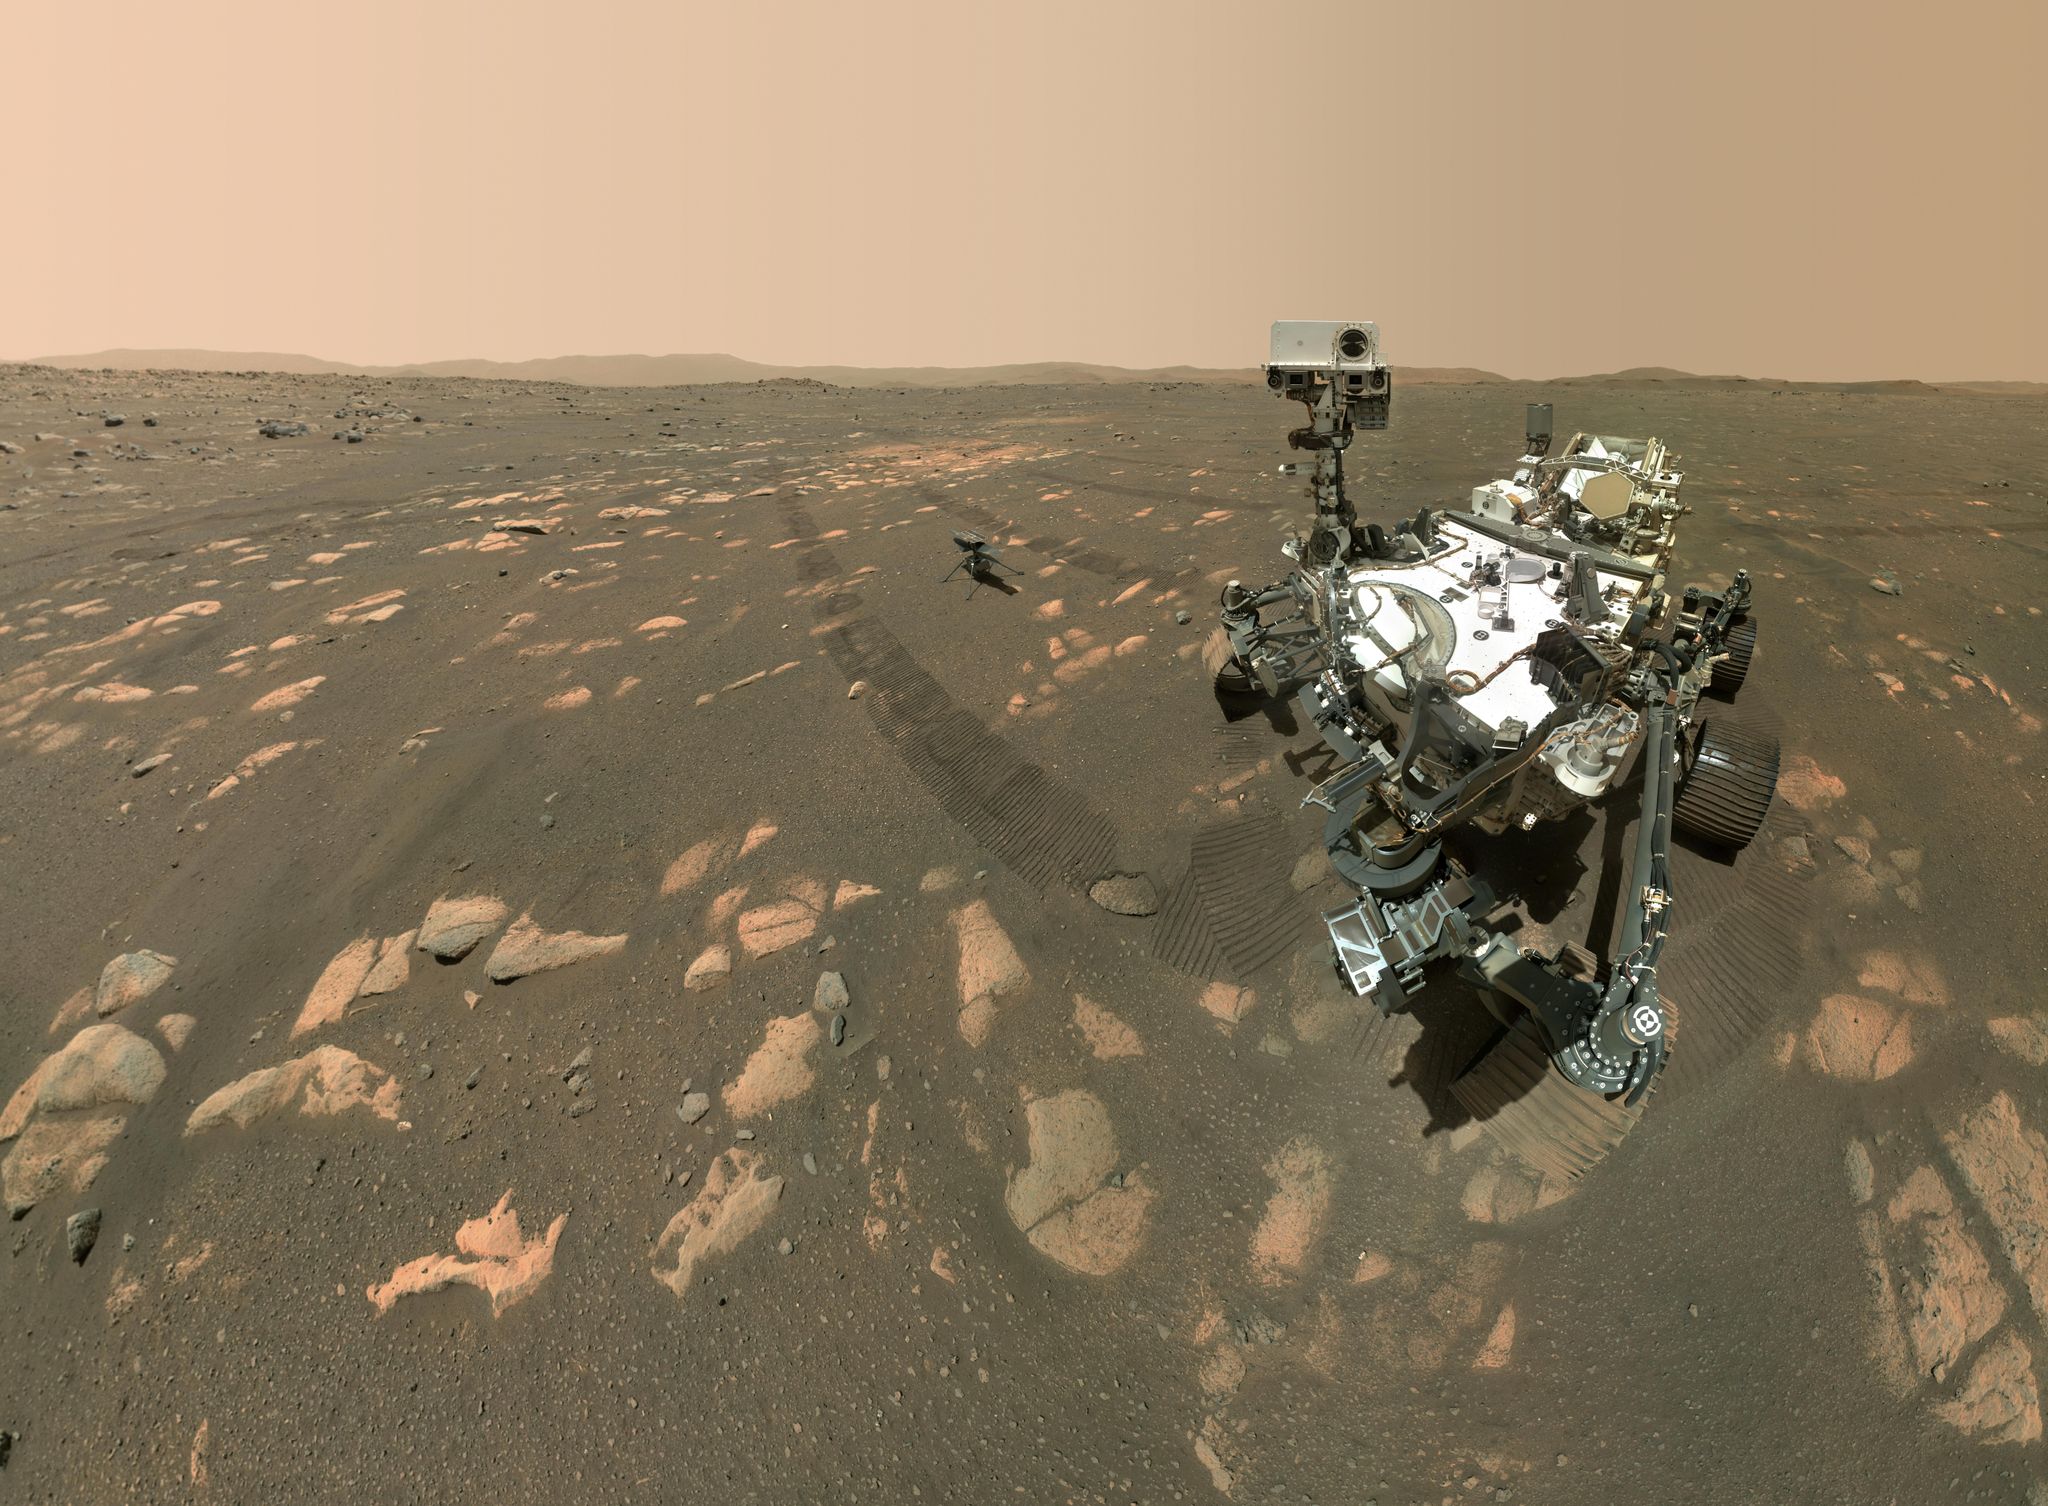 La sonda statunitense accanto al microelicottero Ingenuity sulla superficie di Marte (Foto: - / NASA / JPL-Caltech / MSSS / dpa)